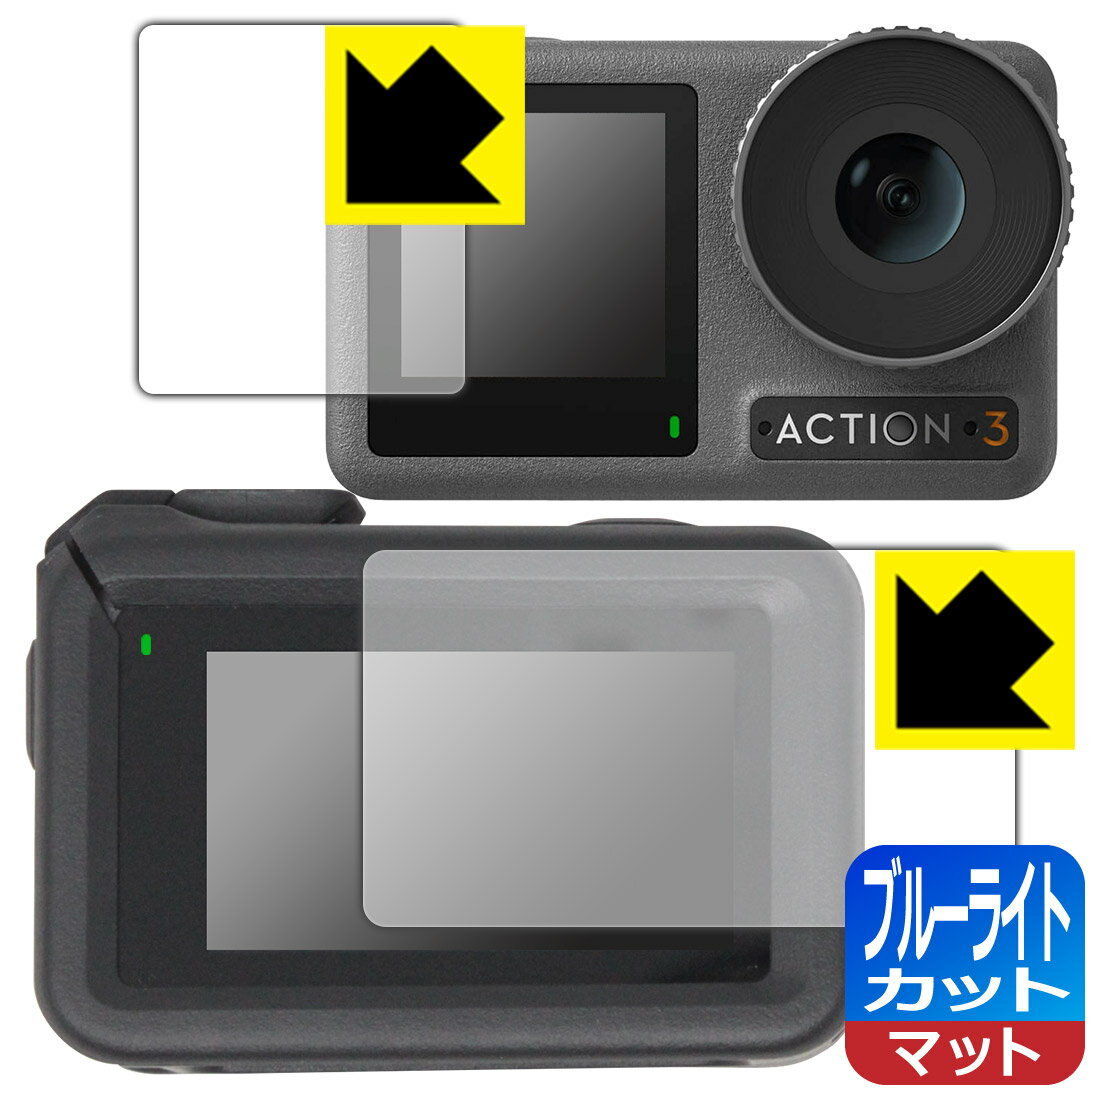 ブルーライトカット【反射低減】保護フィルム DJI Osmo Action 3 (メイン用/サブ用) 【保護フレーム装着あり対応】 日本製 自社製造直販